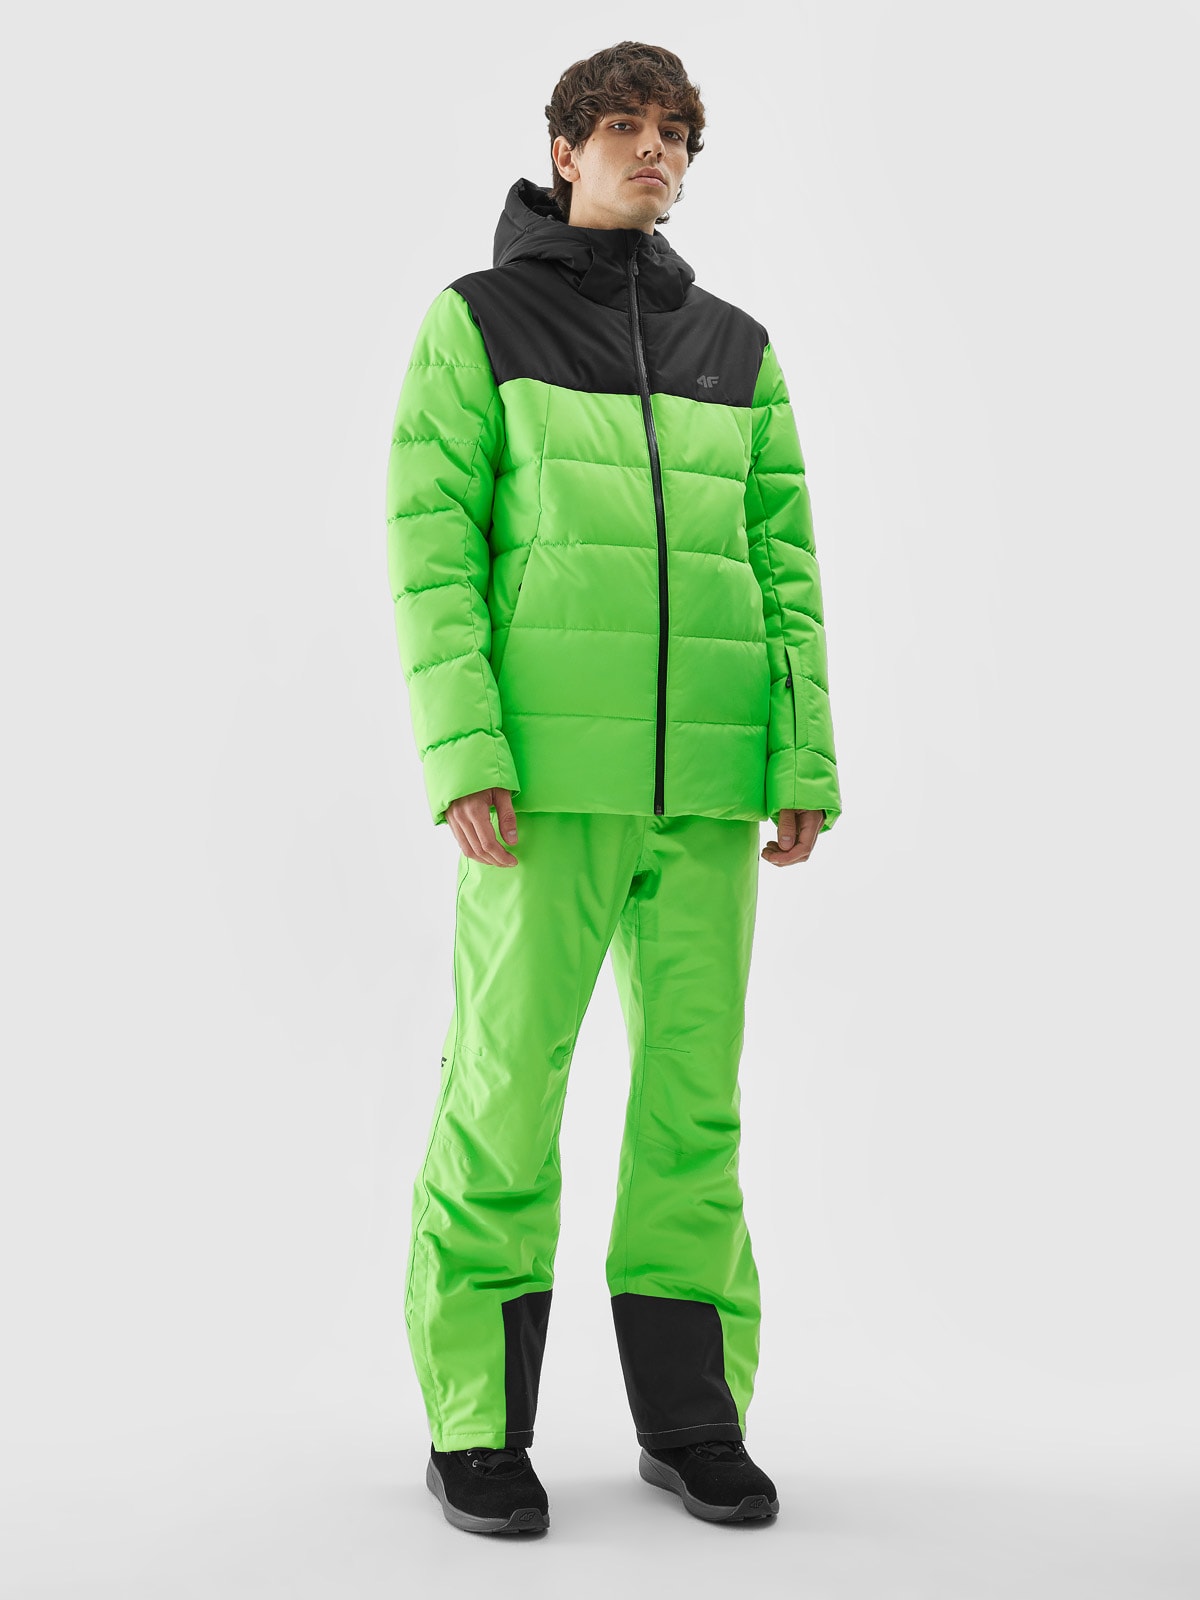 Pánska zatepľovacia lyžiarska bunda so syntetickou výplňou - zelená